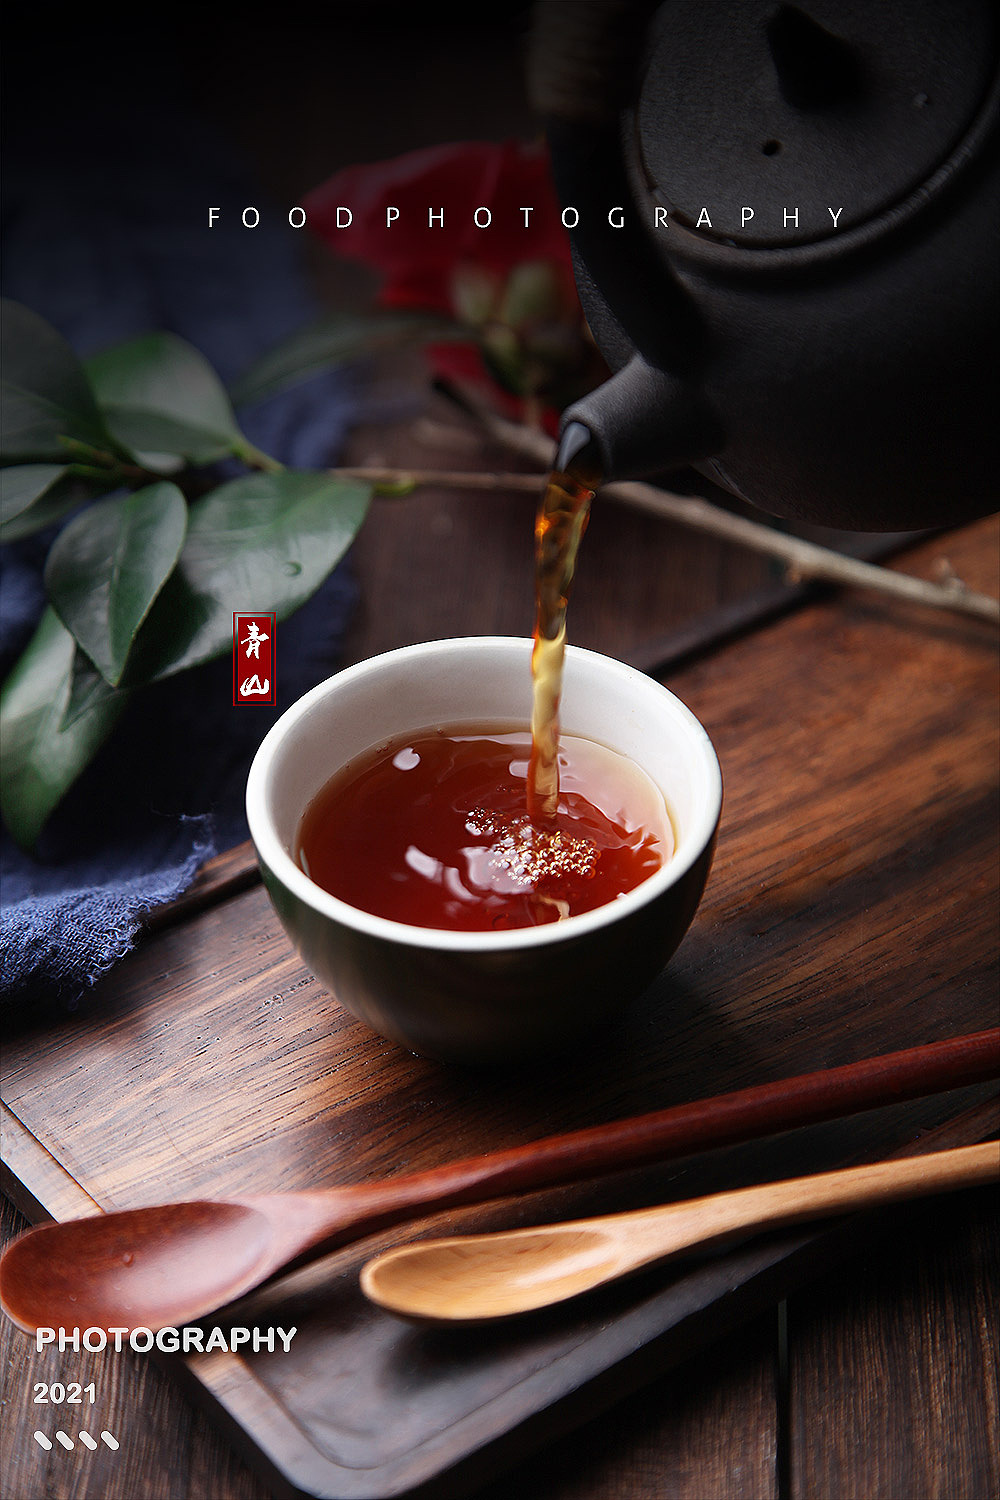 湄潭茶汤图片